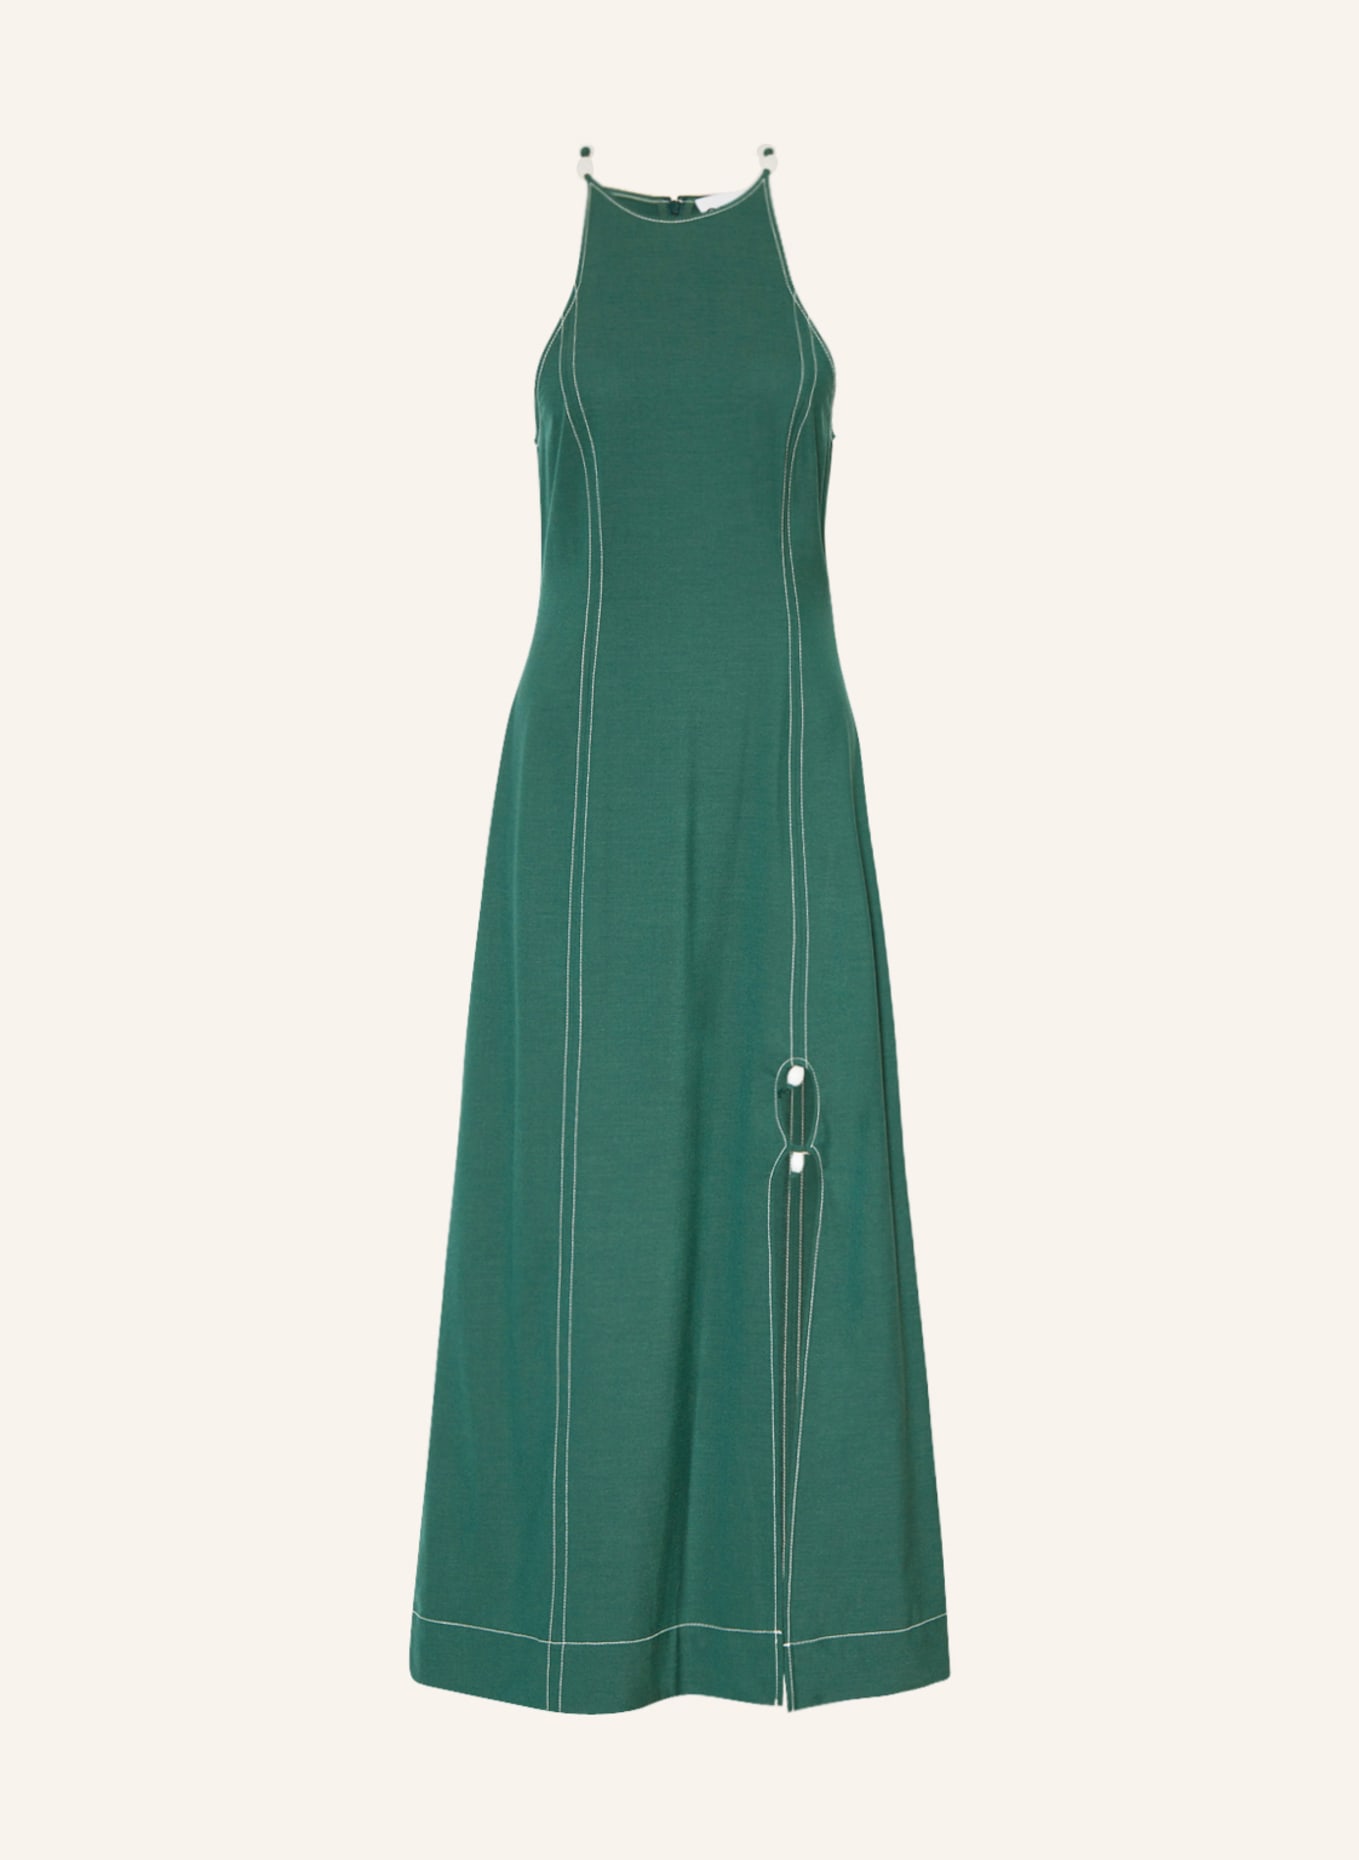 GANNI Kleid mit Perlen und Cut-out, Farbe: DUNKELGRÜN (Bild 1)